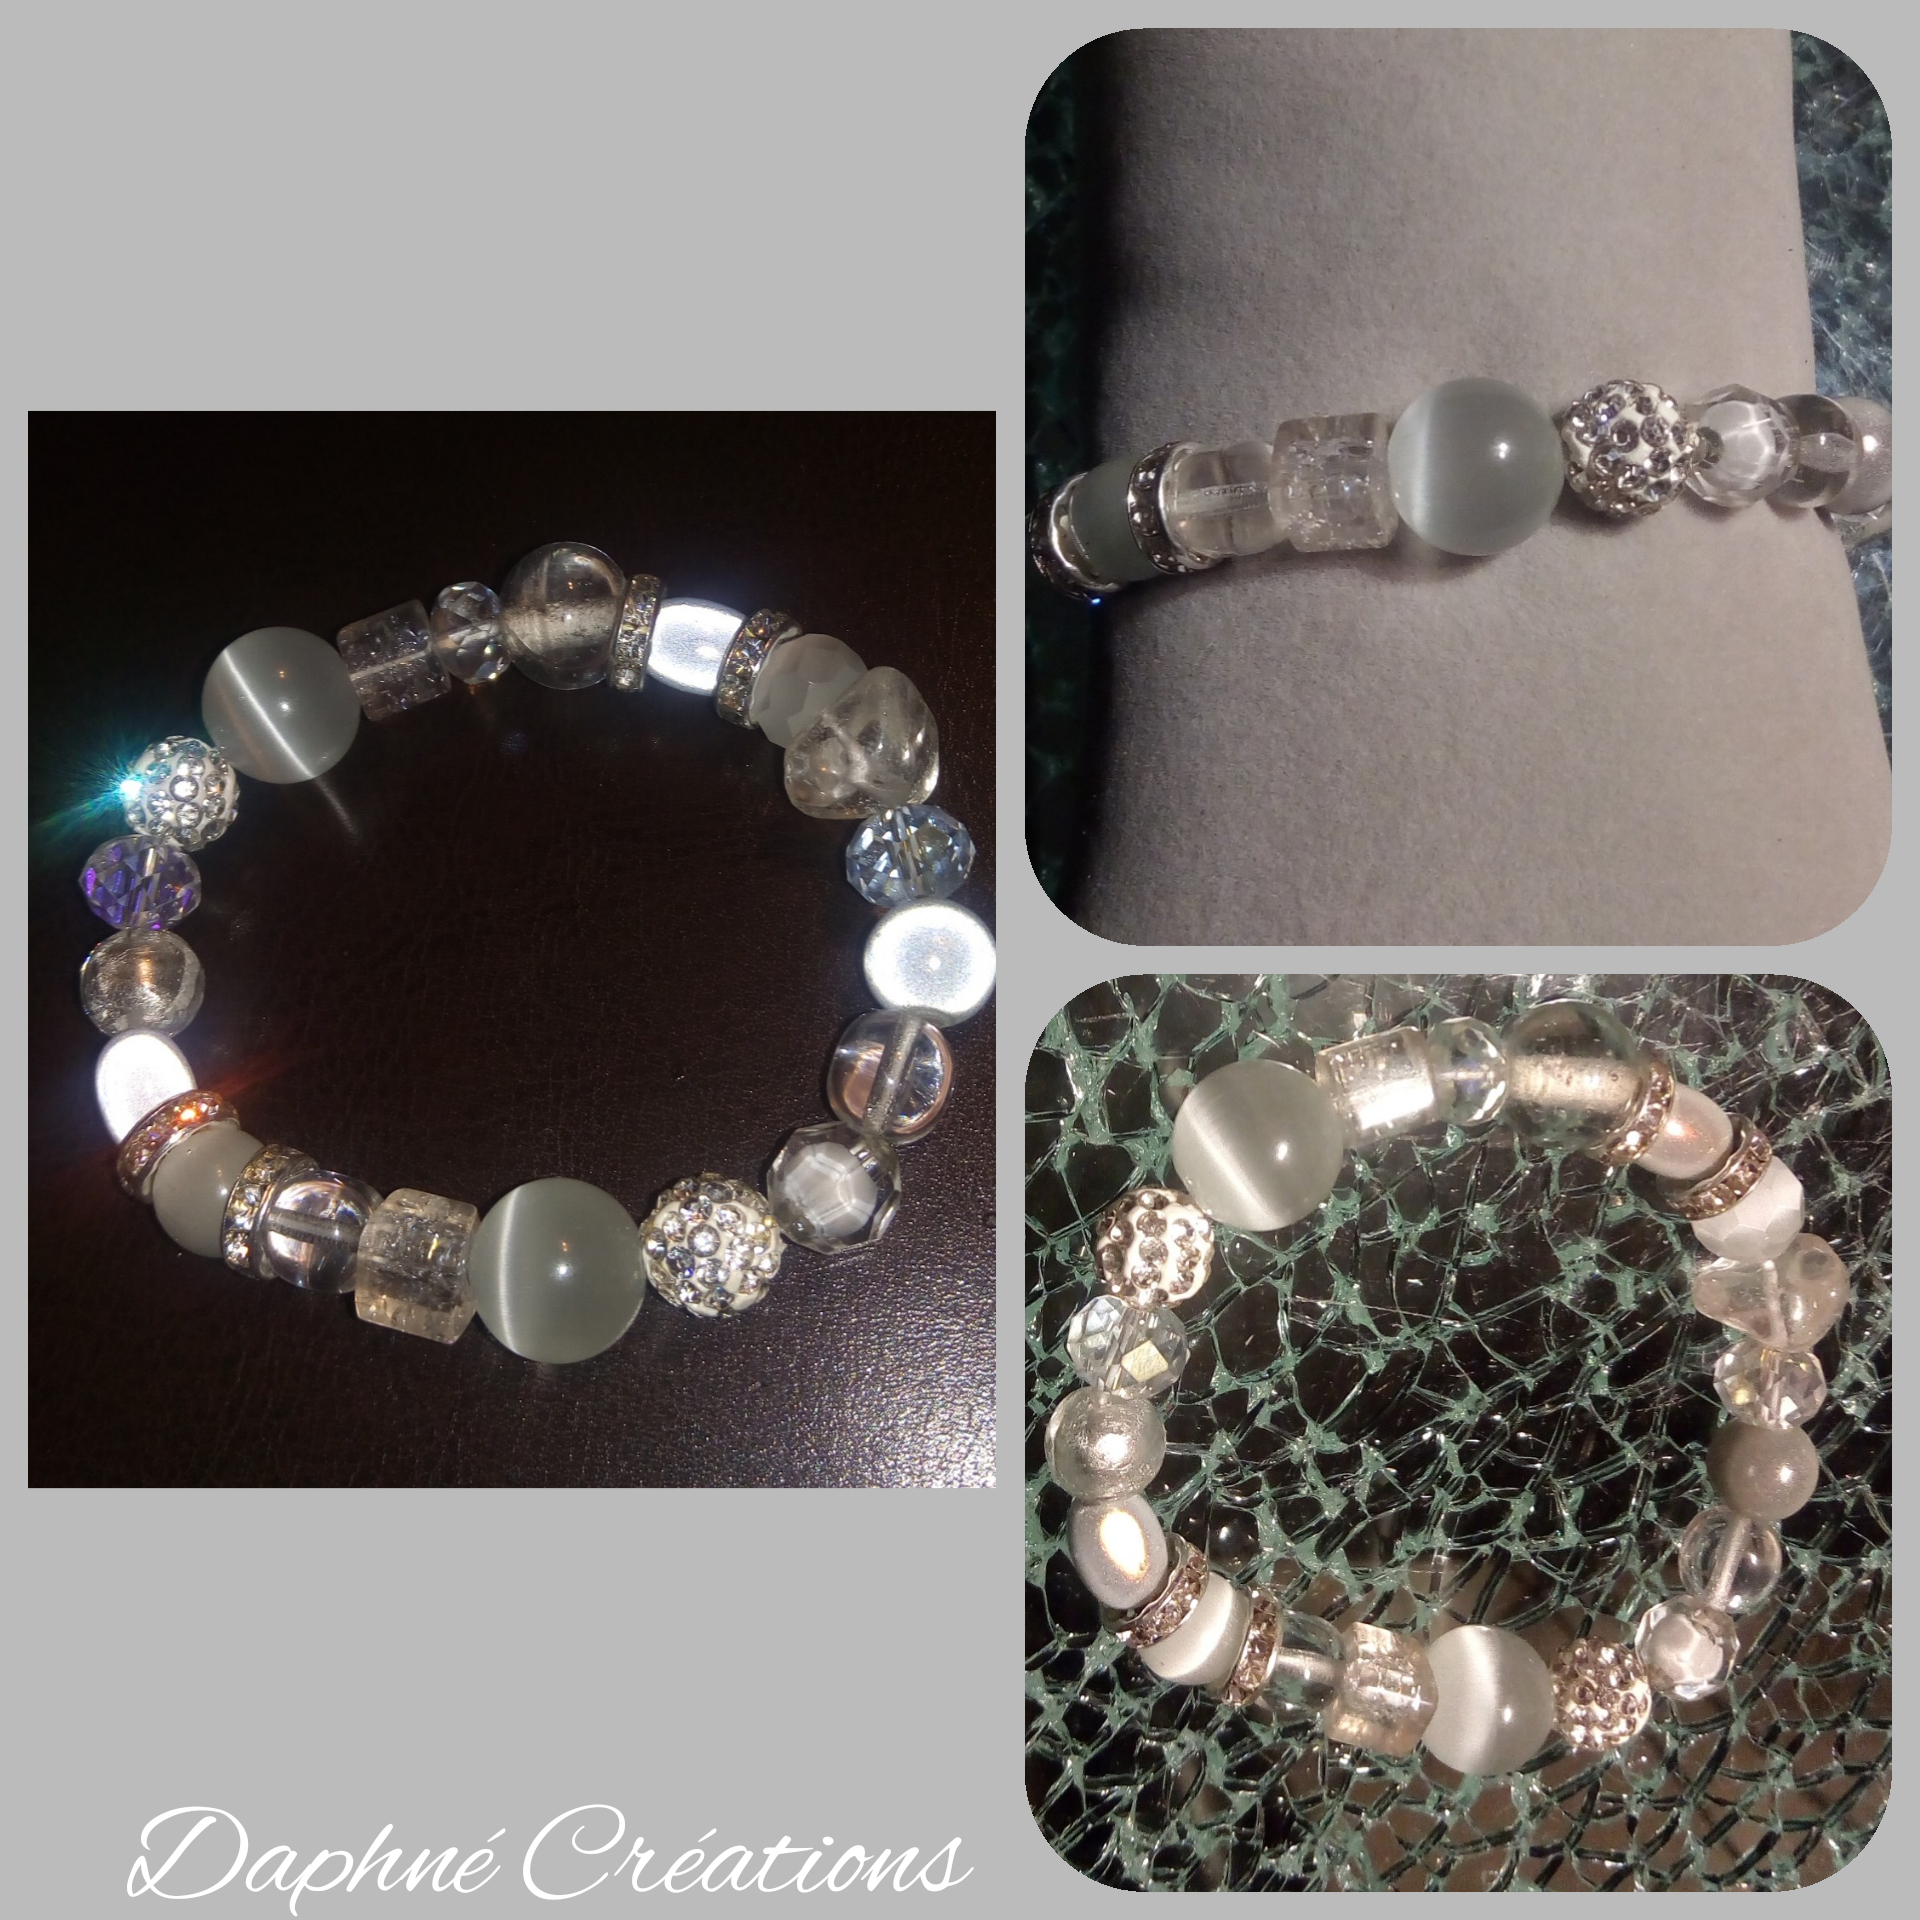 Bracelet blanc, strass, perles magiques, cristal de swarovski, oeil de chat et verre.